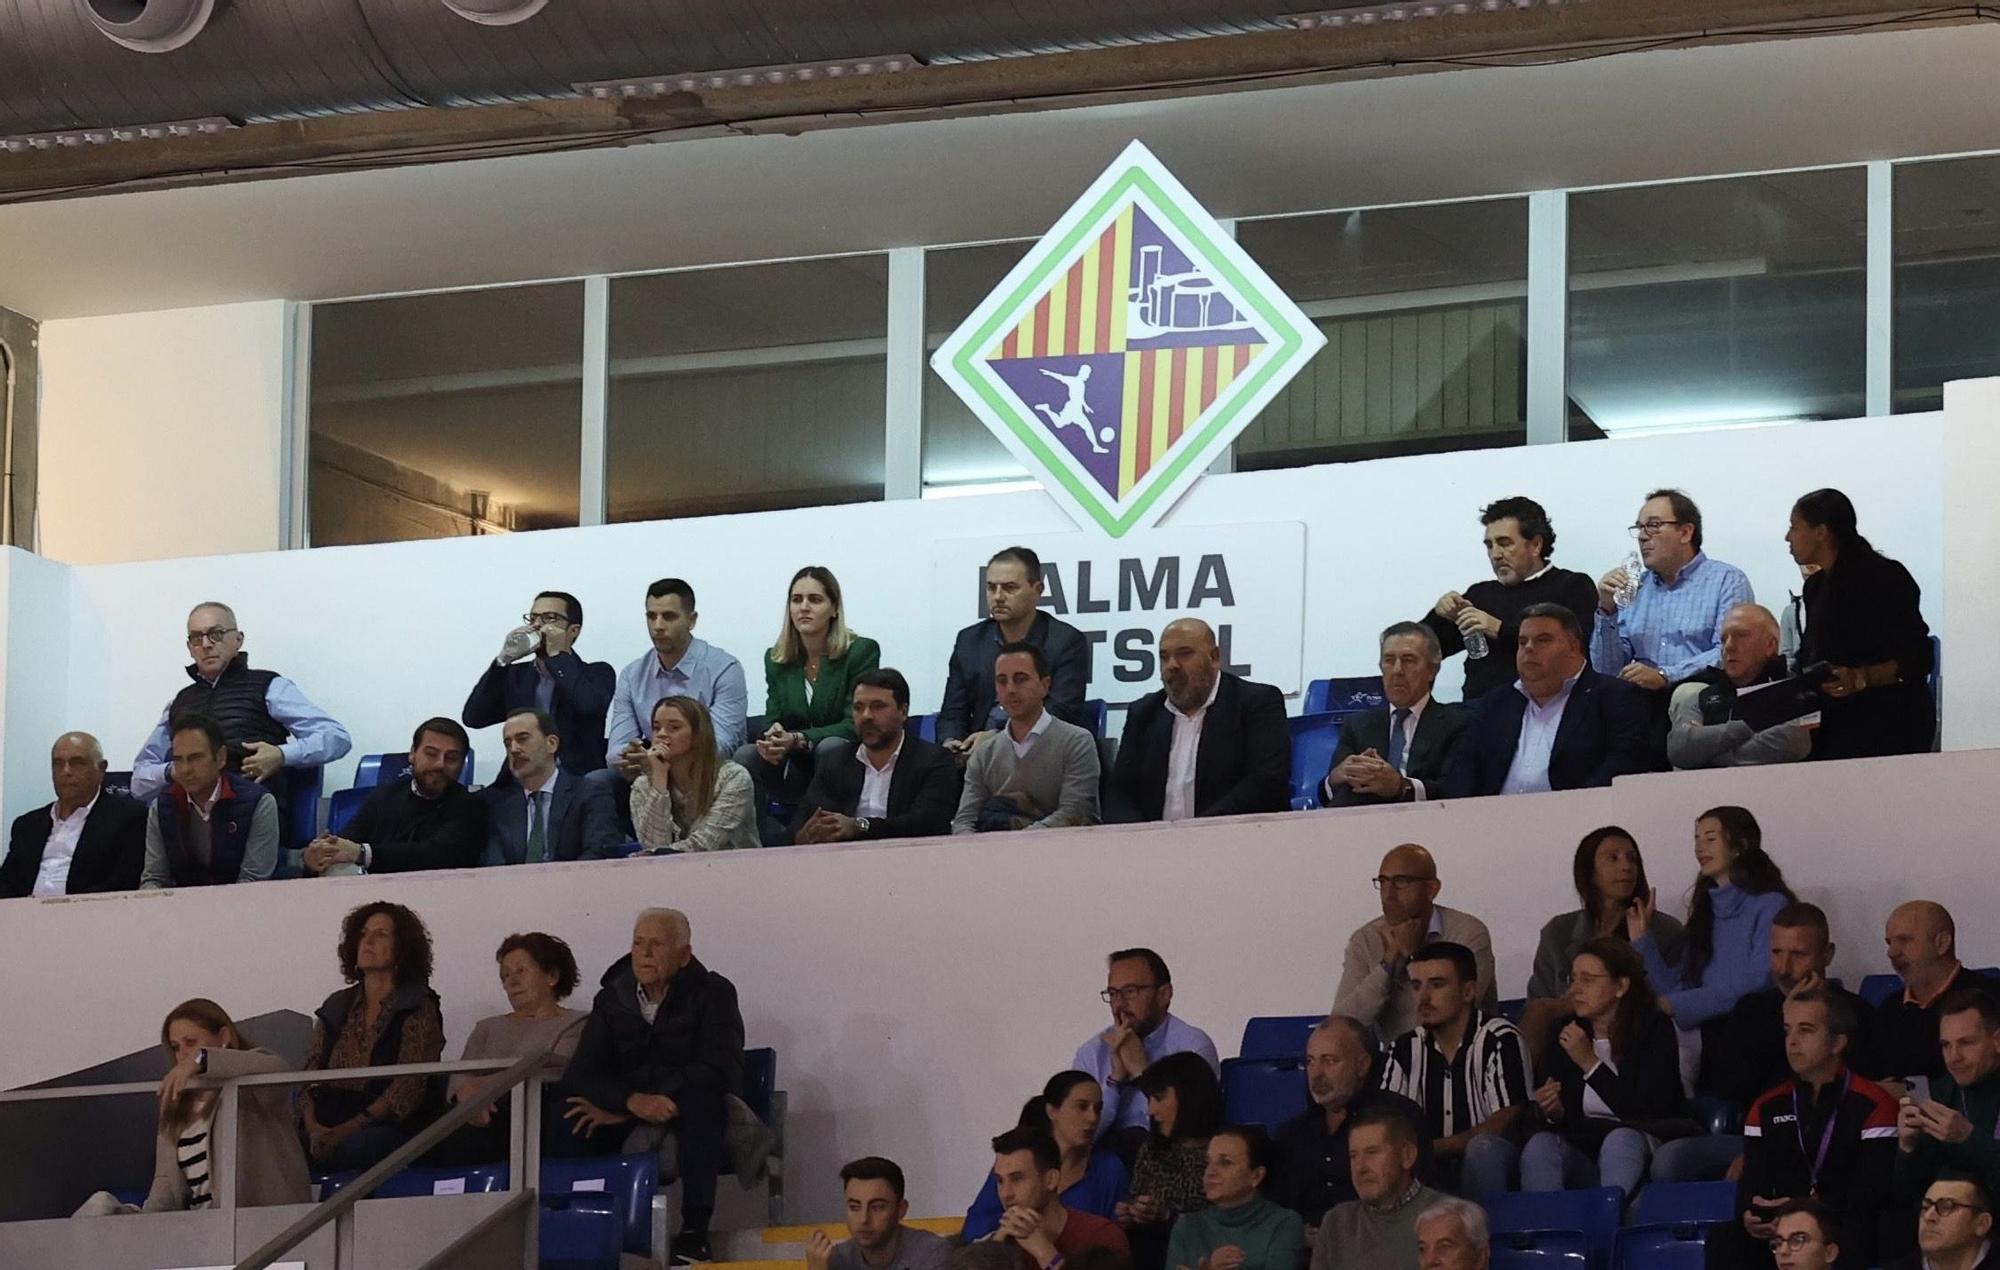 La clasificación del Palma Futsal para la Fase Final de la Champions League, en imágenes